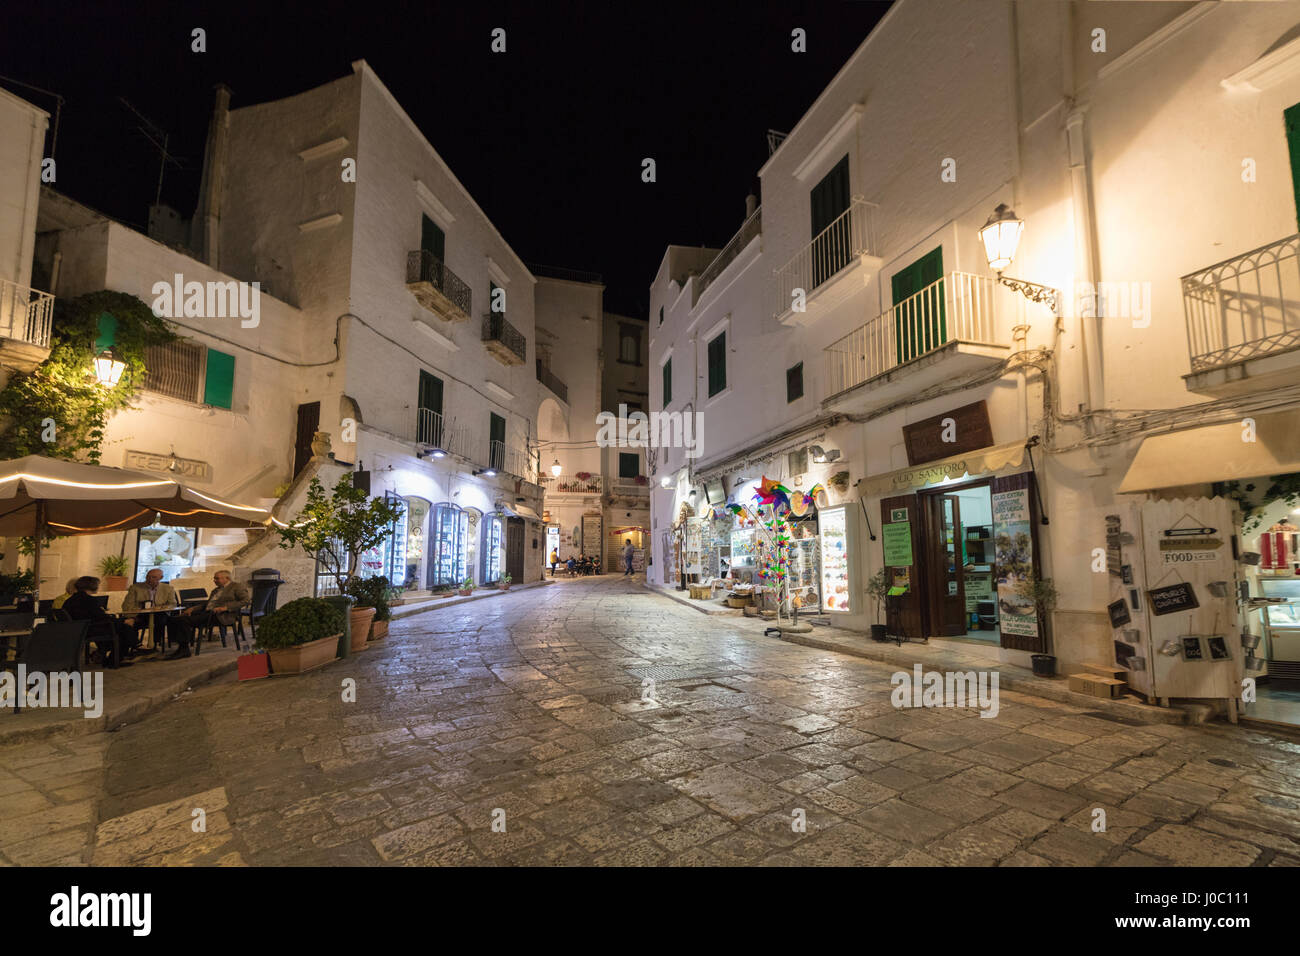 Vue nocturne de la ruelles typiques de la vieille ville médiévale, Ostuni, province de Brindisi, Pouilles, Italie Banque D'Images